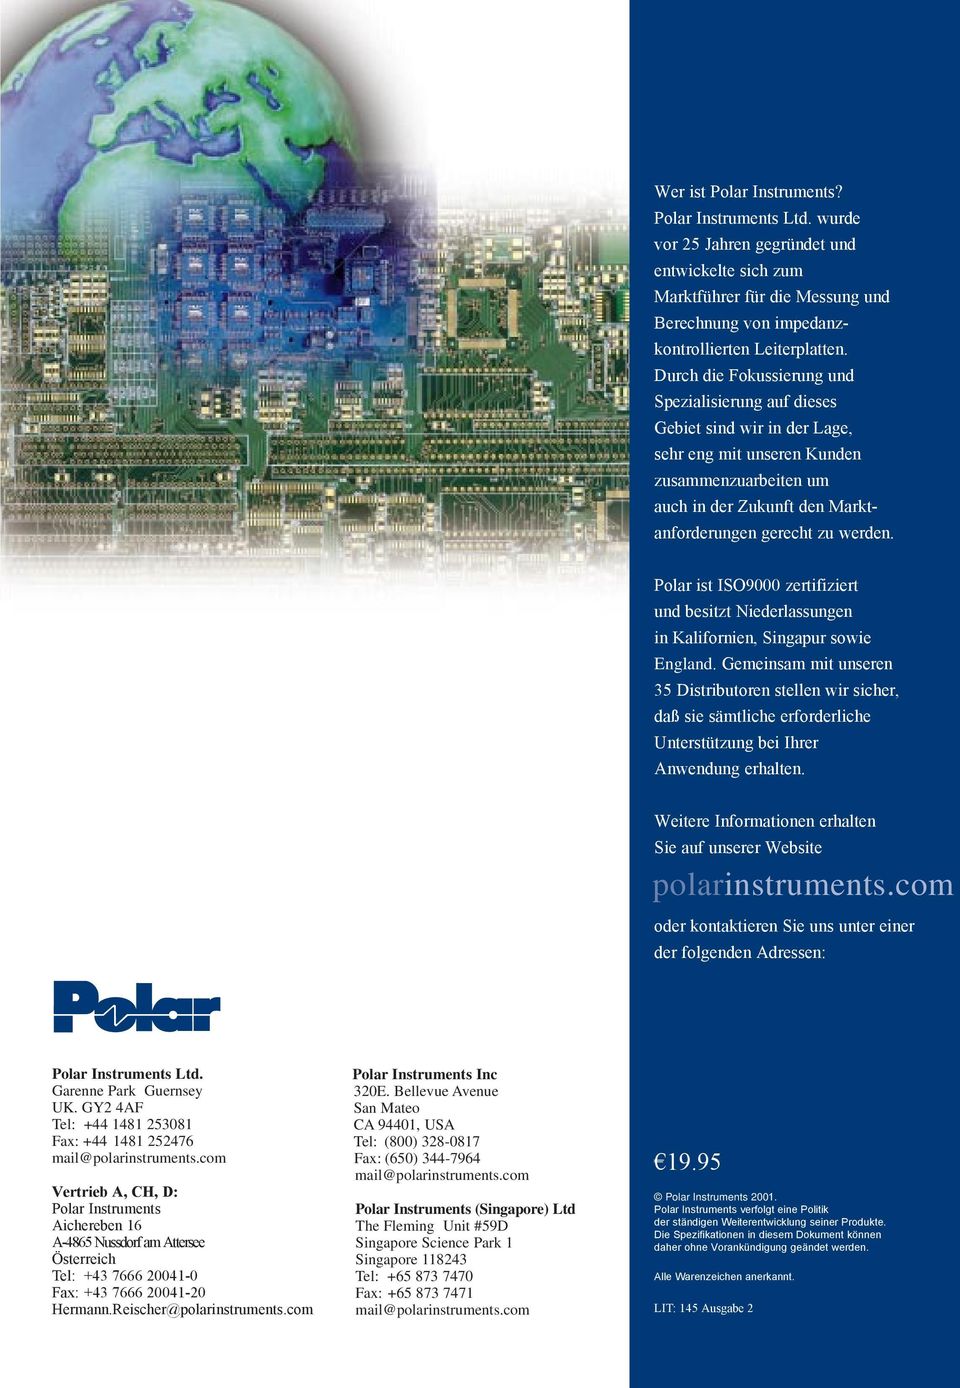 Polar ist ISO9000 zertifiziert und besitzt Niederlassungen in Kalifornien, Singapur sowie England.